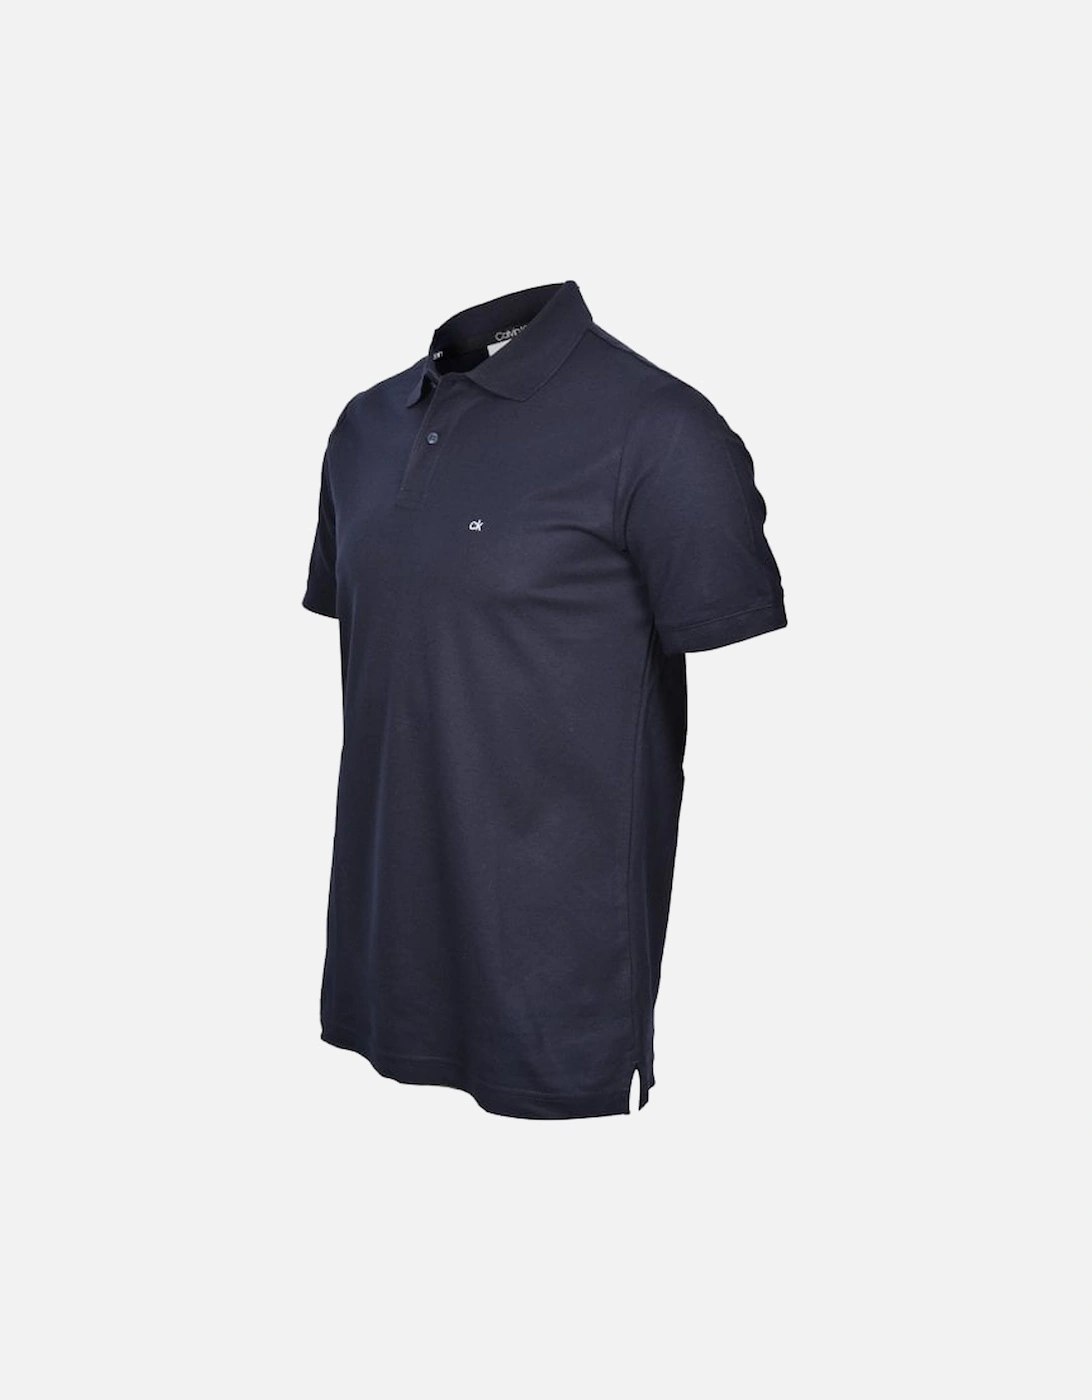 Embroidered Logo Refined Pique Cotton Polo Shirt, Navy